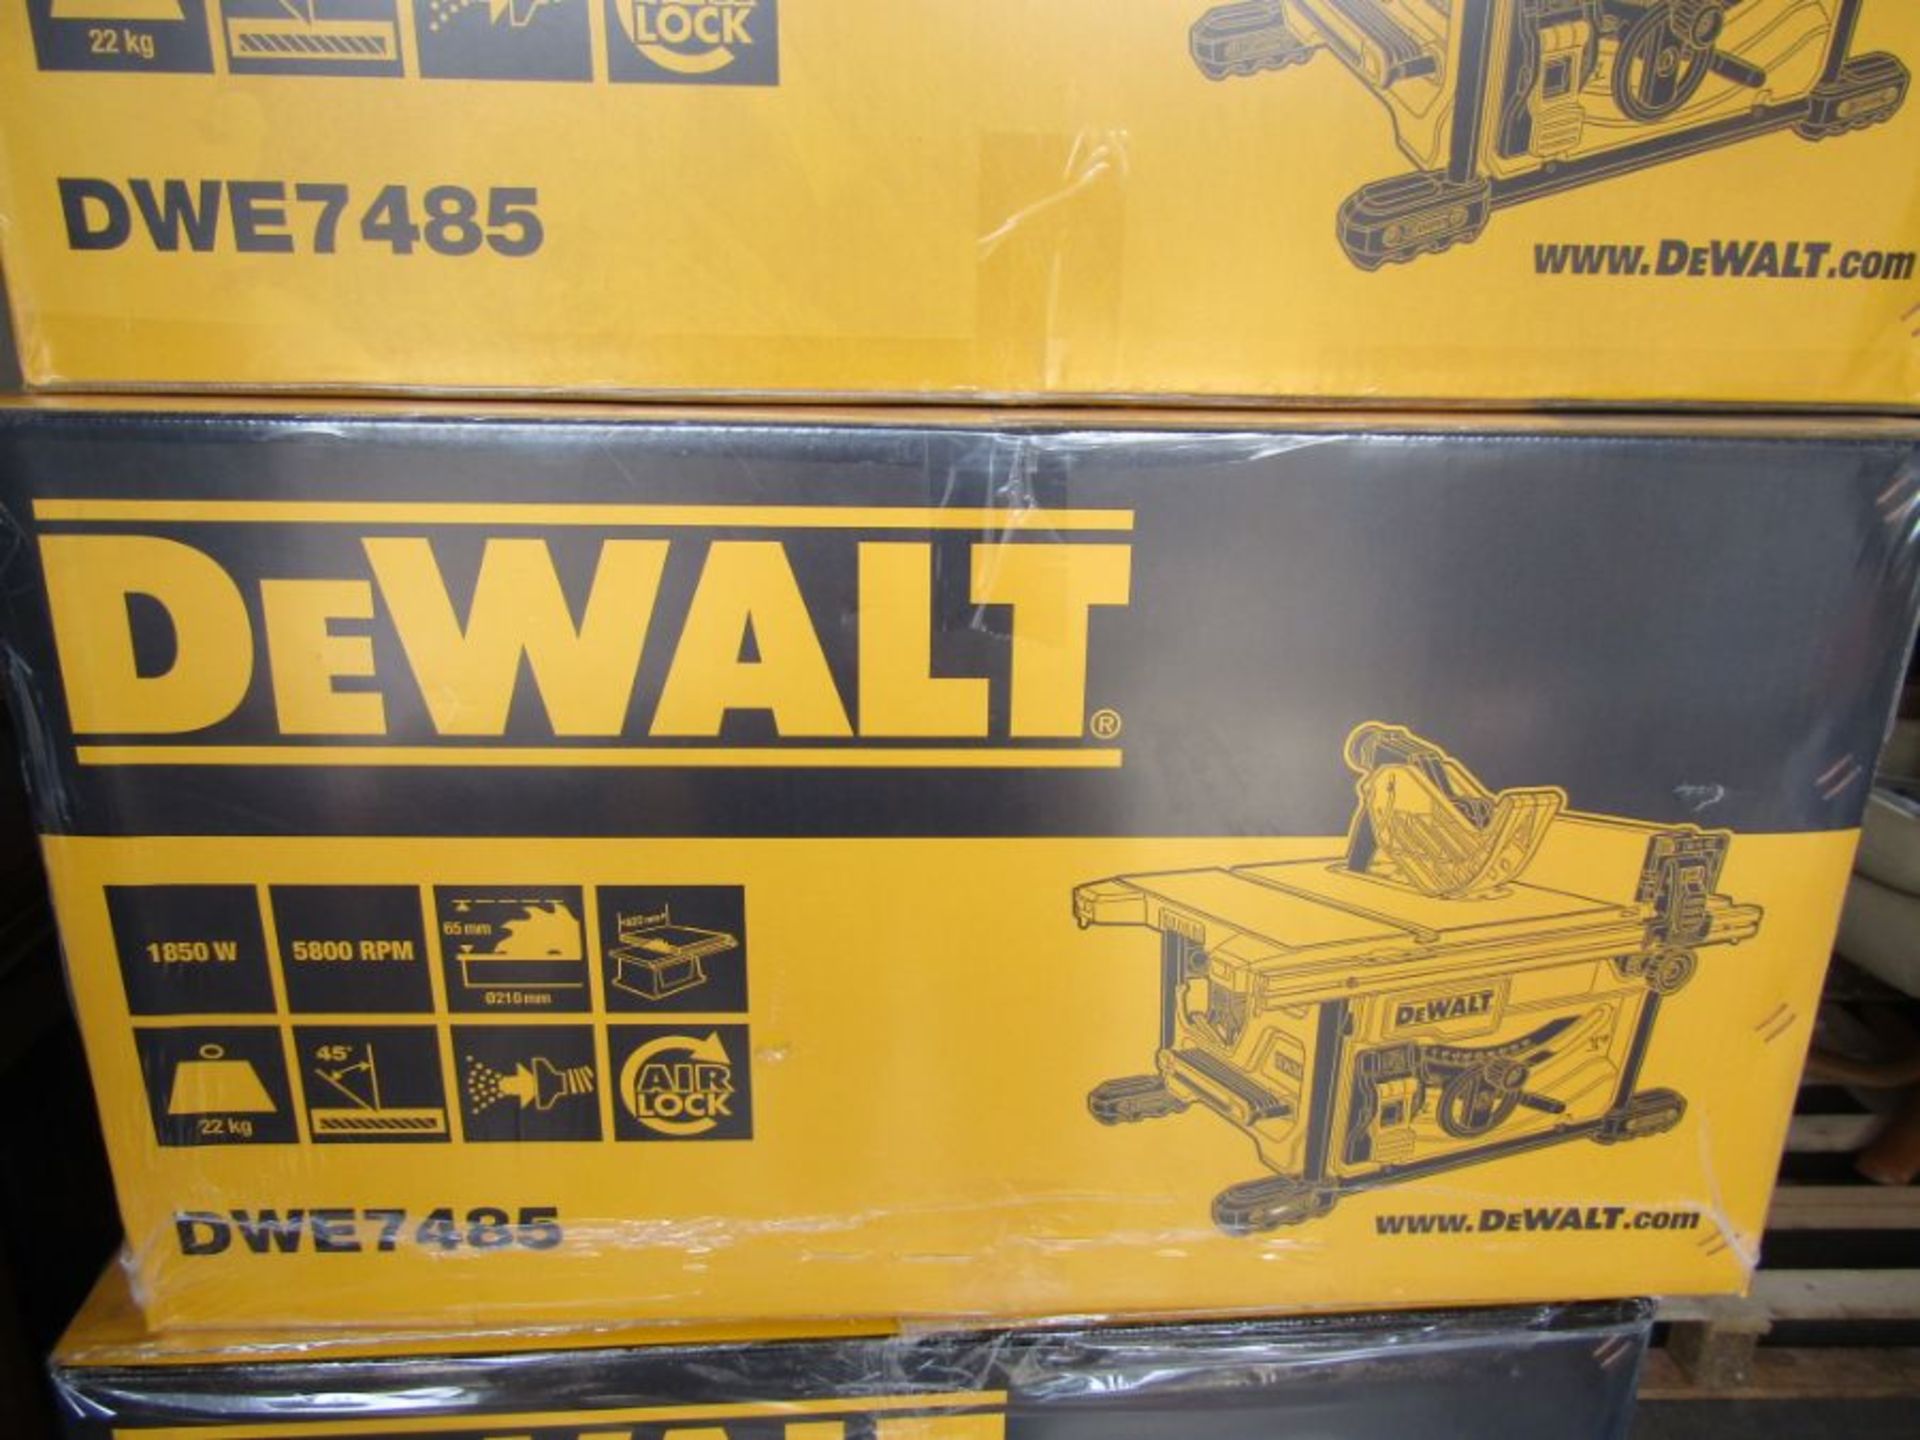 DeWalt DWE7485-GB 240V 210mm 1850W Electric Table Saw - Blkbfr1929434 - Image 3 of 3